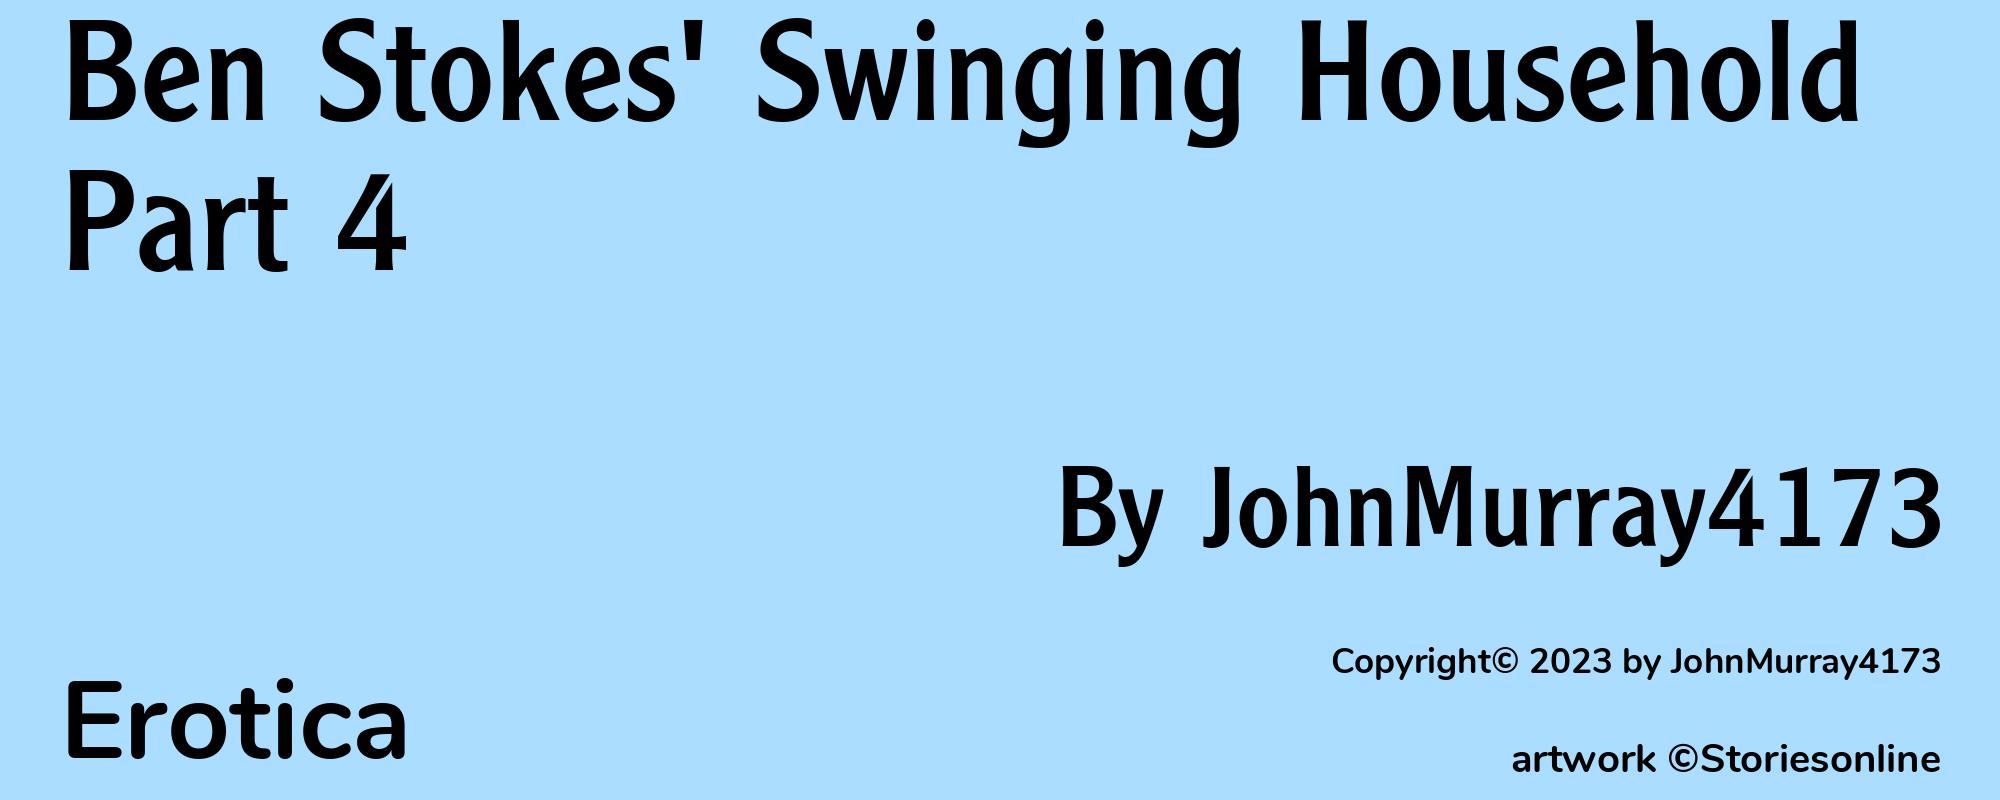 Ben Stokes' Swinging Household Part 4 - Cover